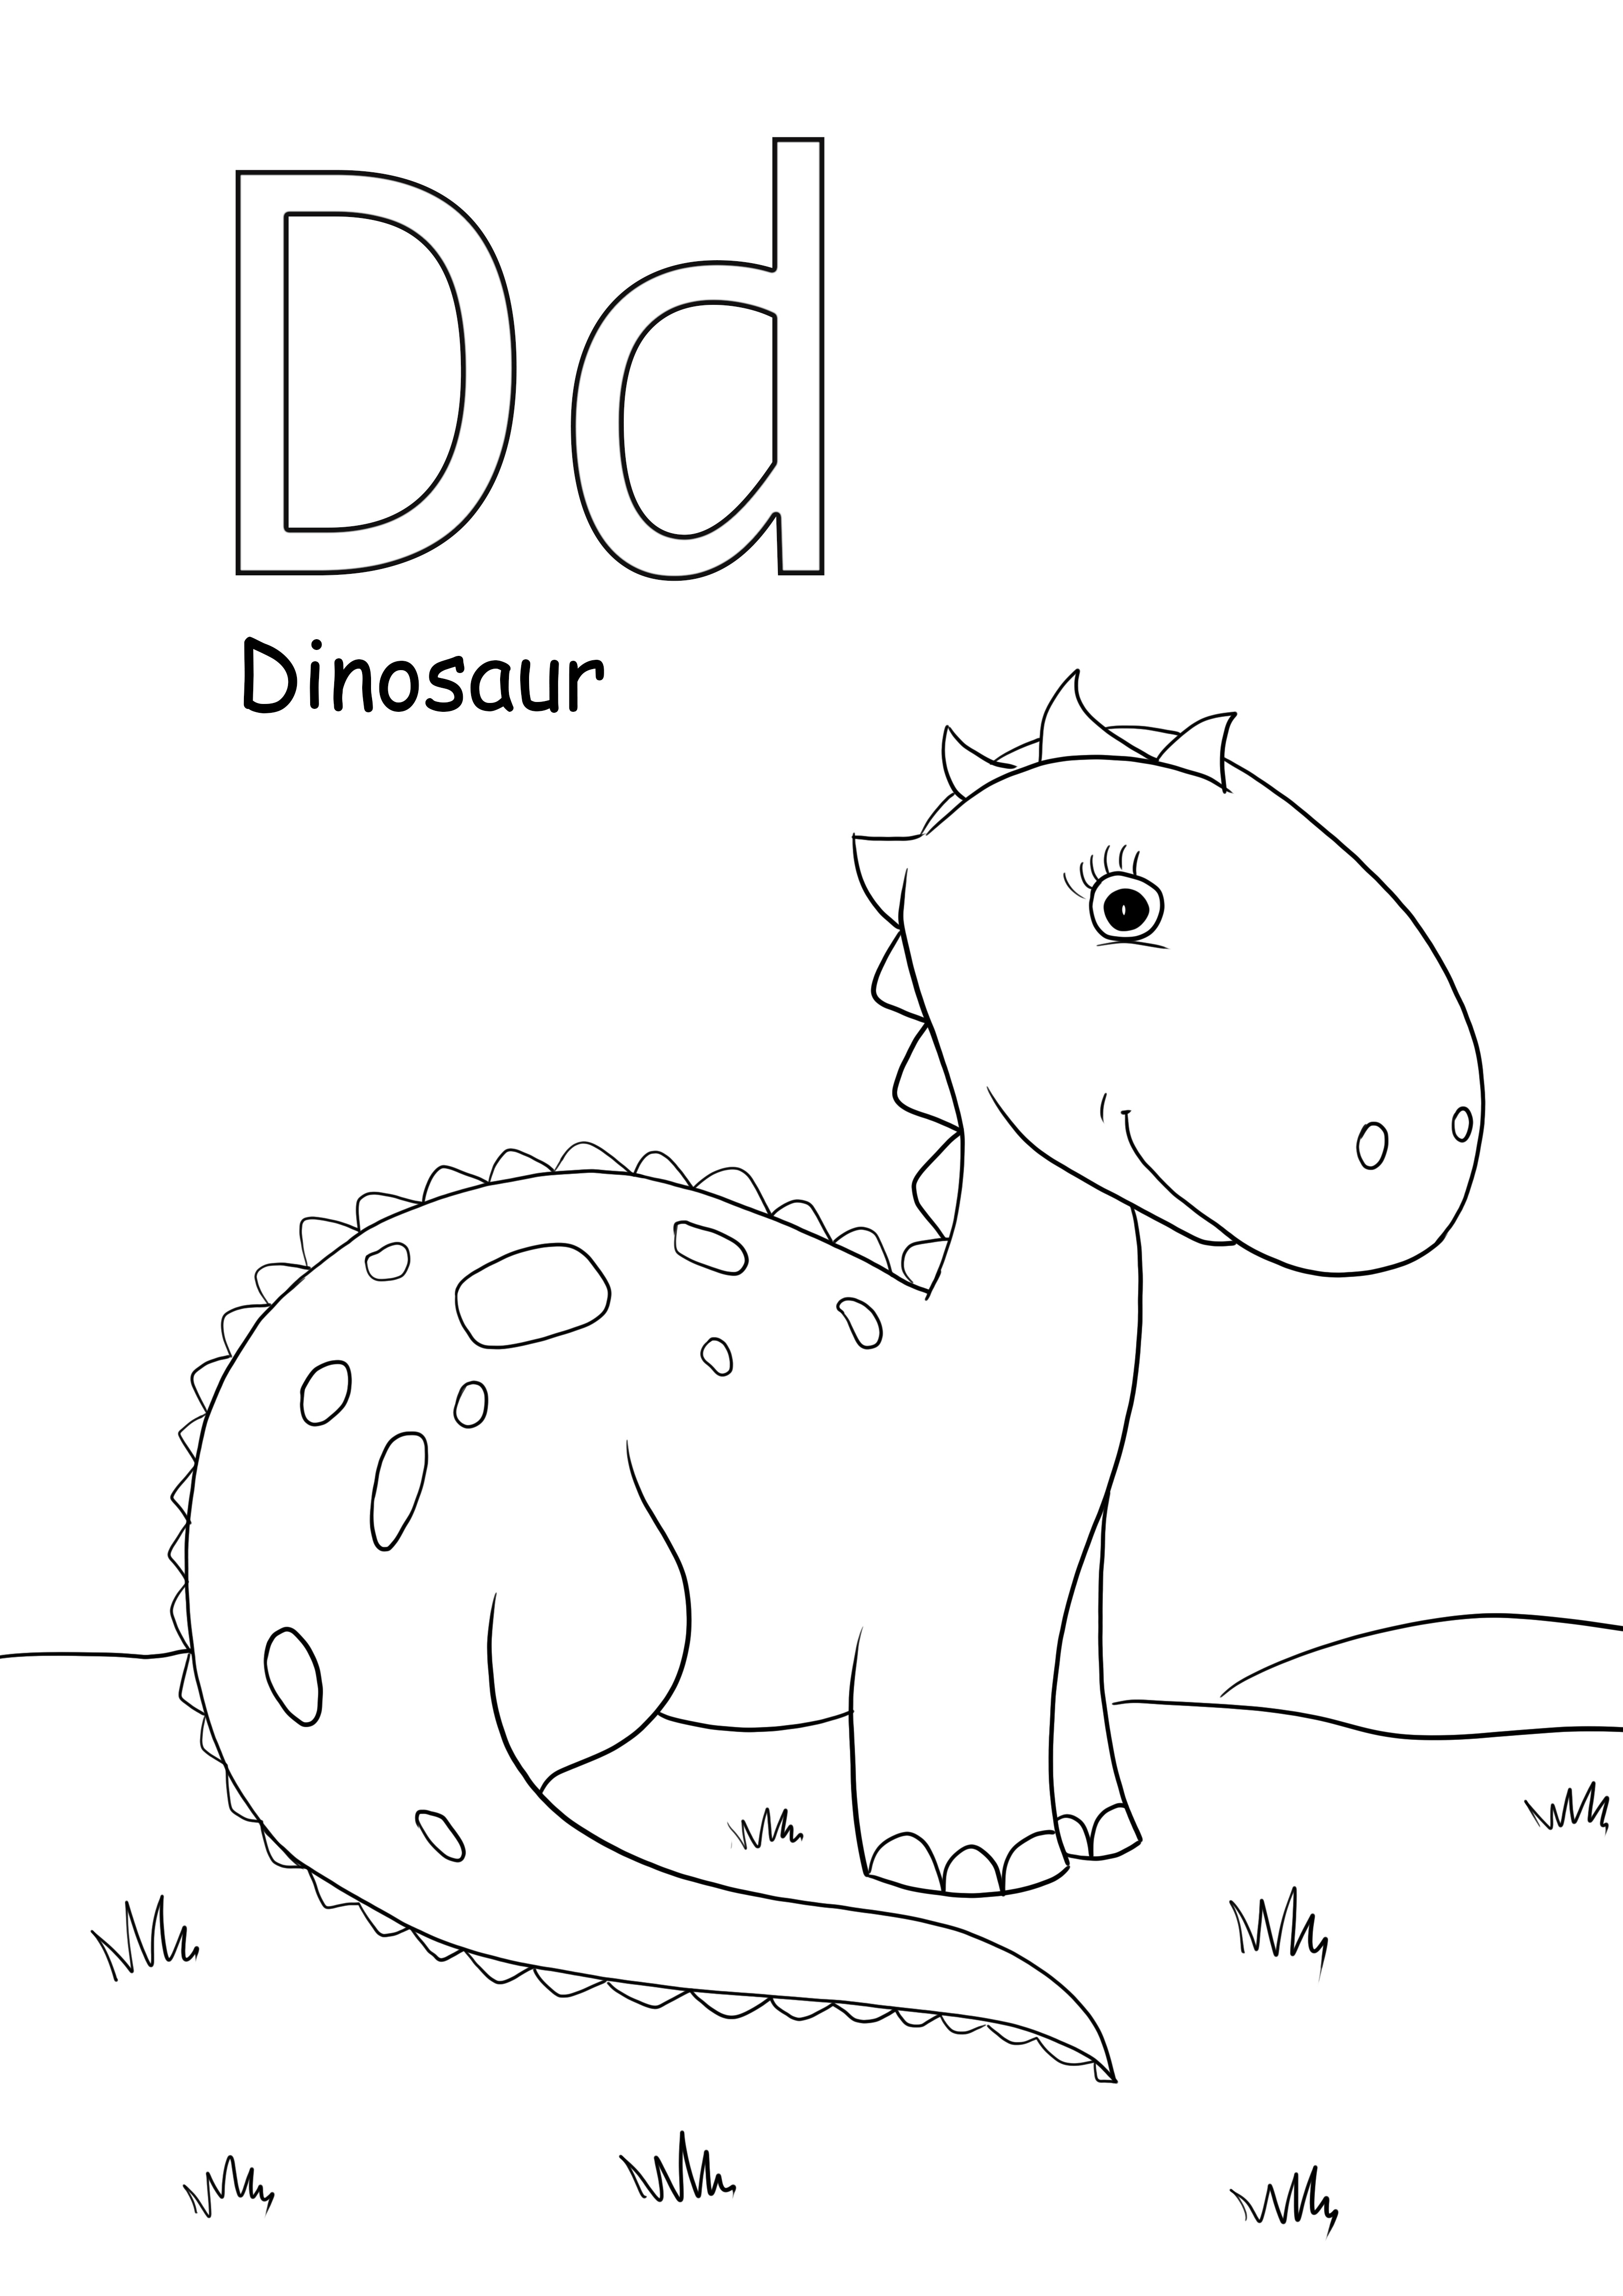 d è per le immagini da colorare di dinosauri ed è stampabile gratuitamente